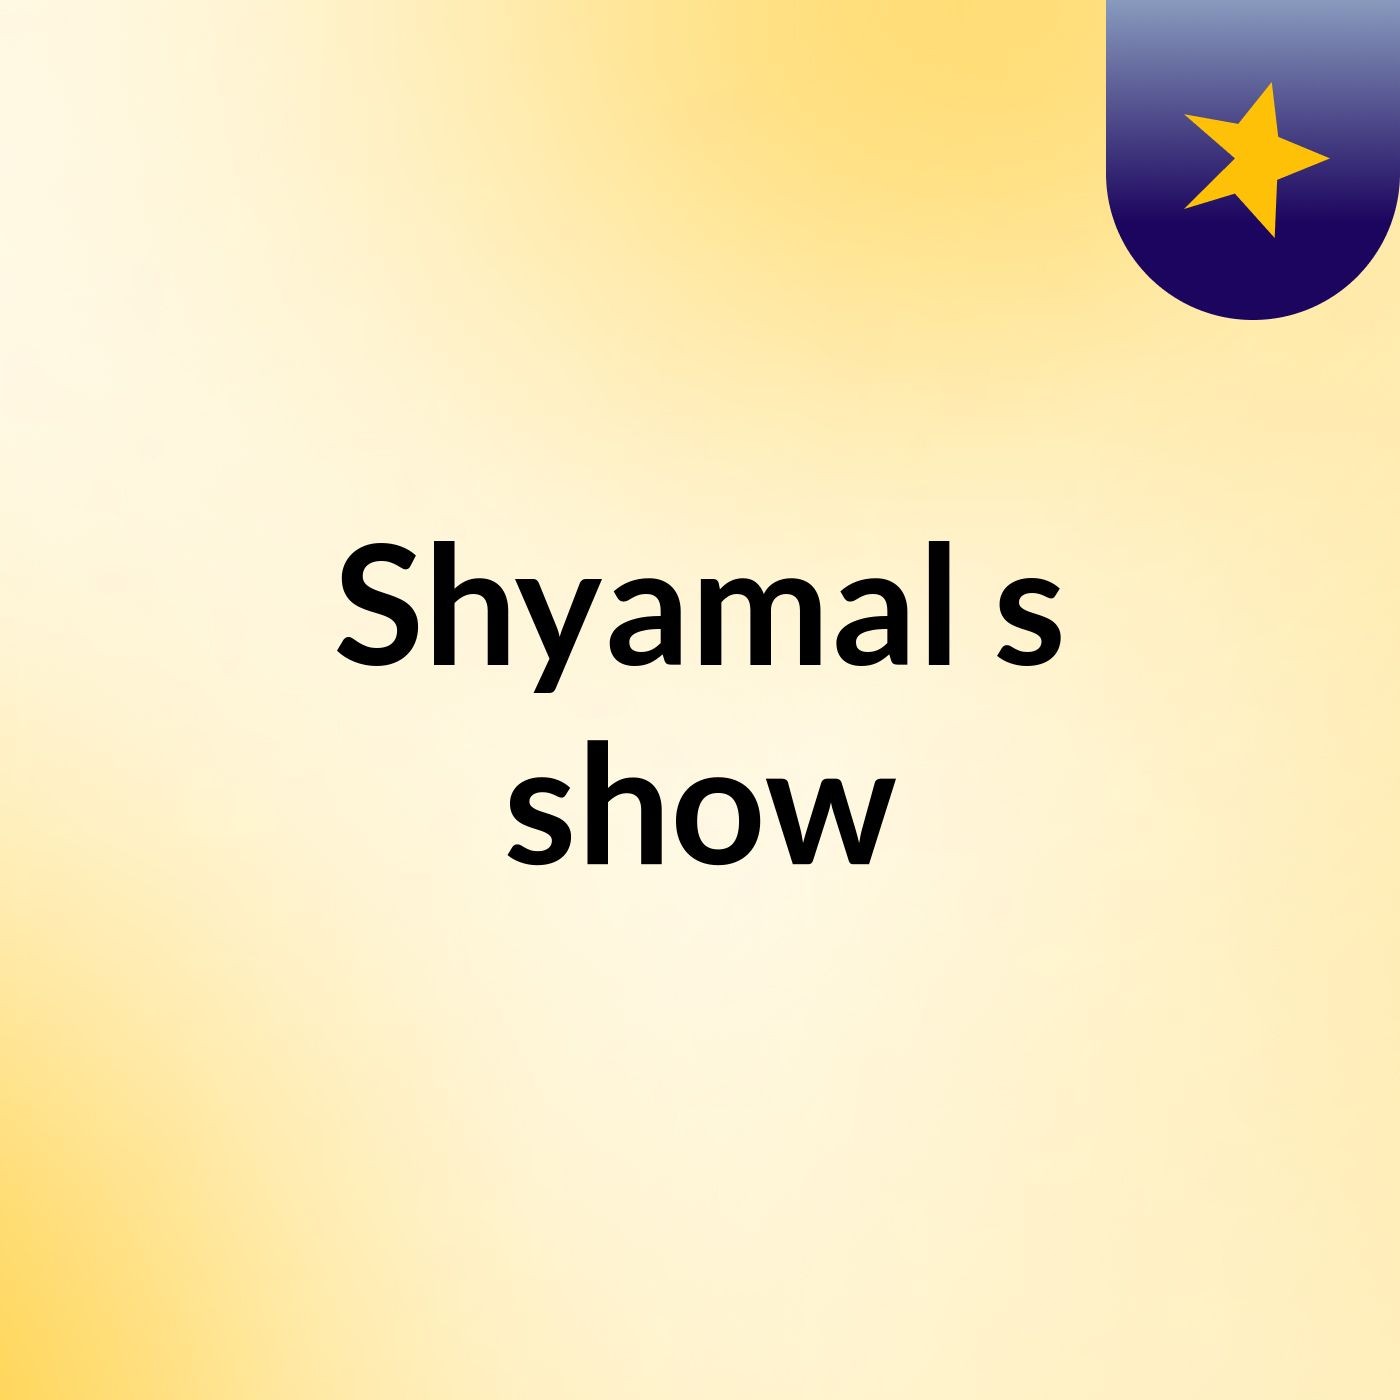 Shyamal's show